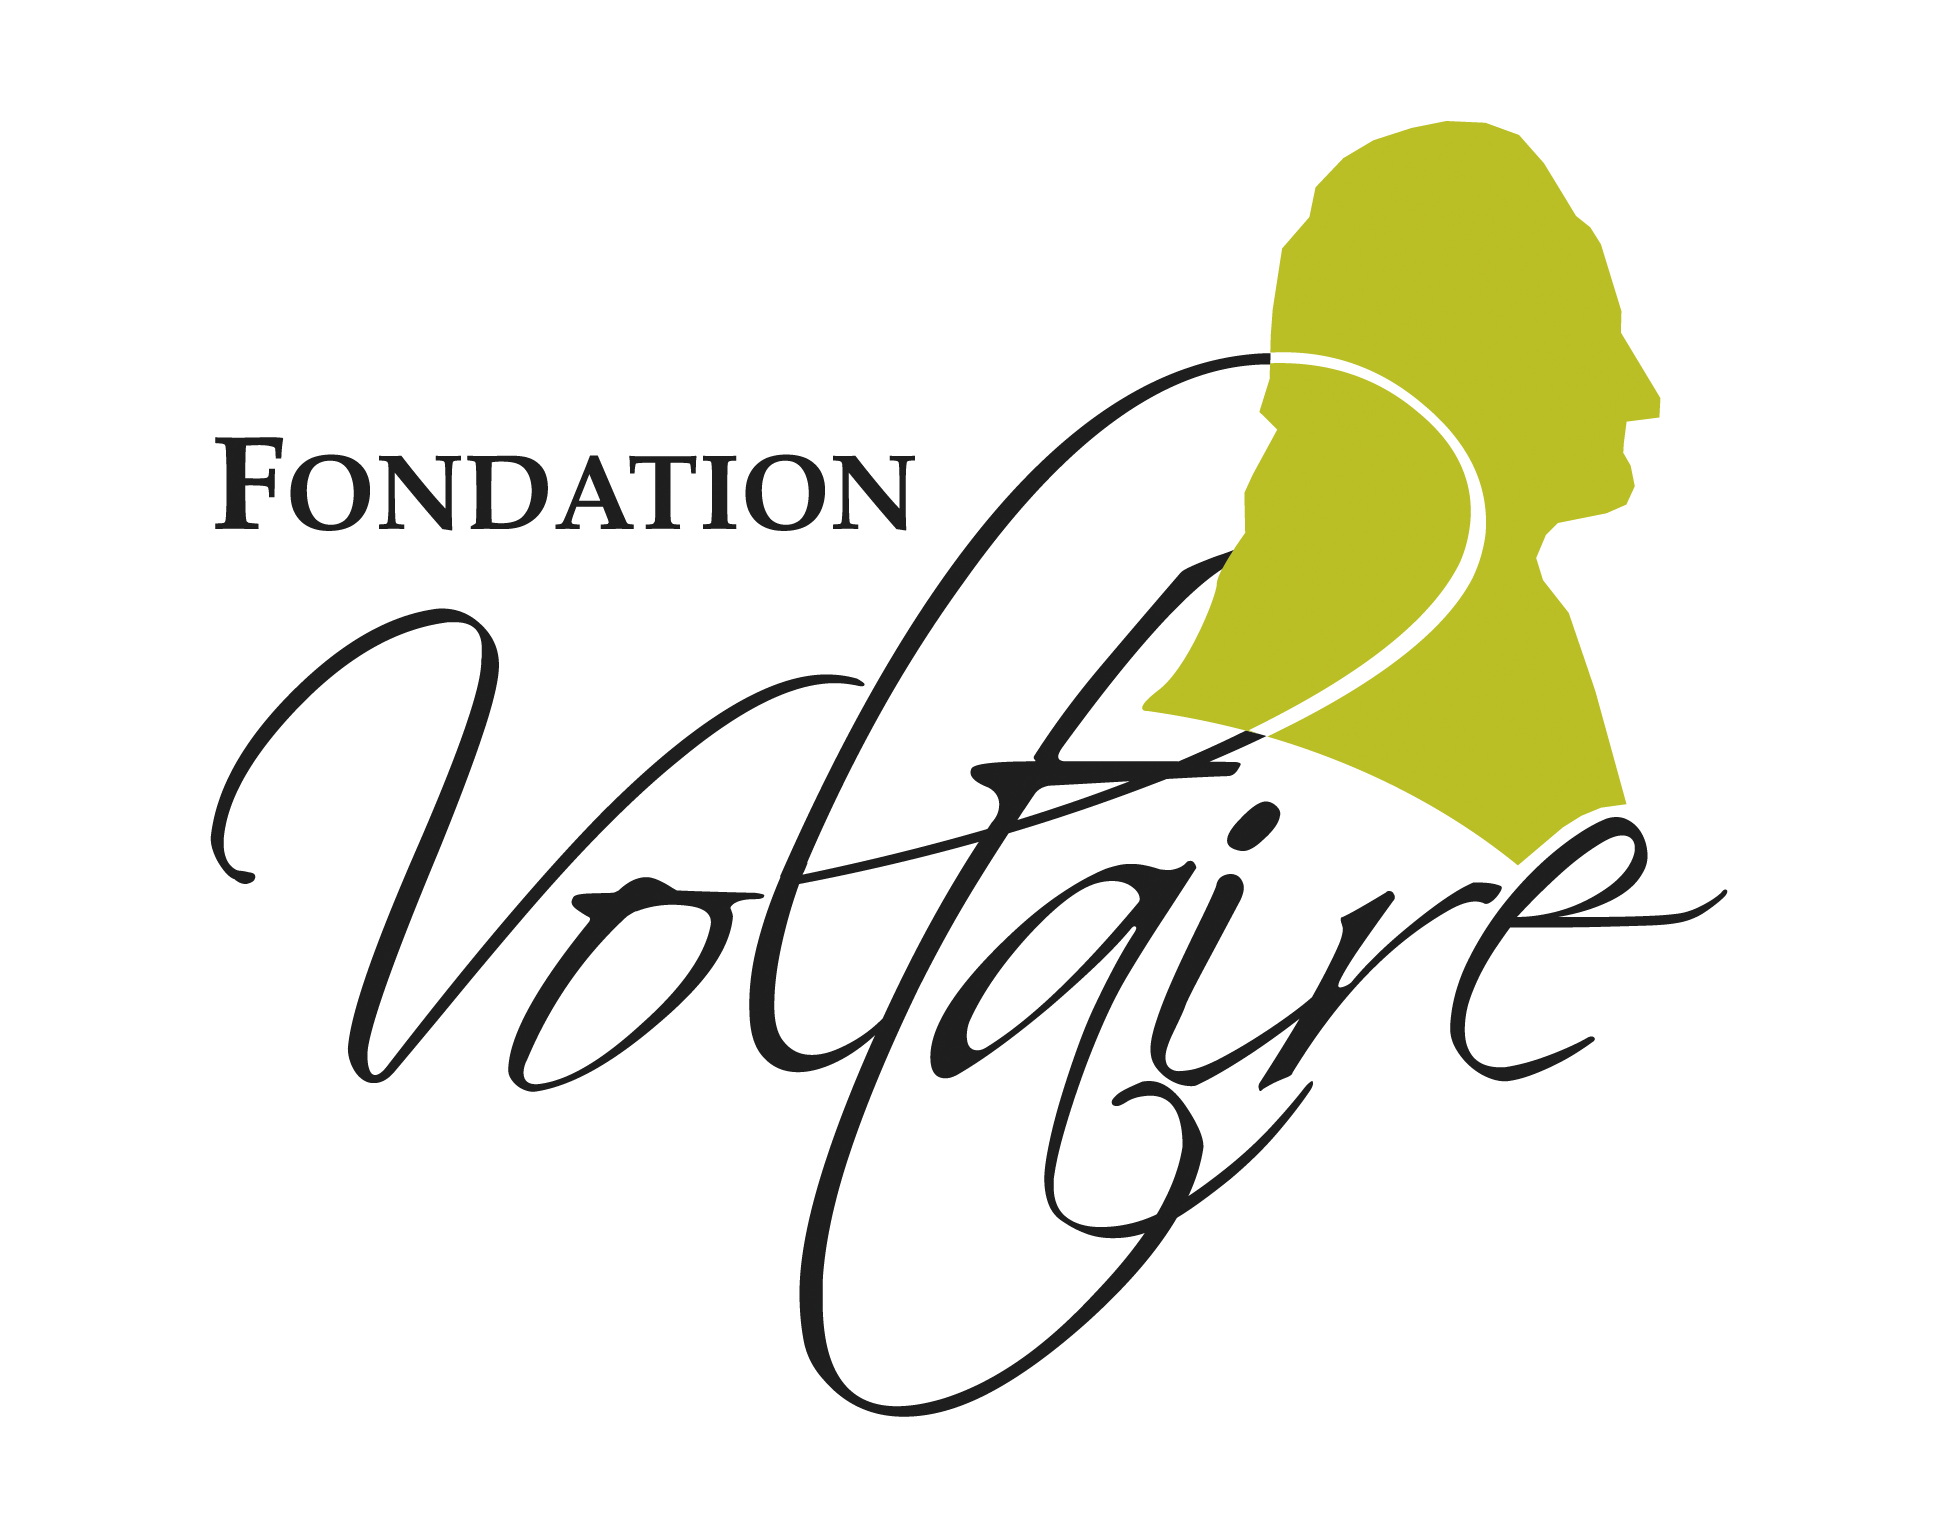 Fondation Voltaire logo